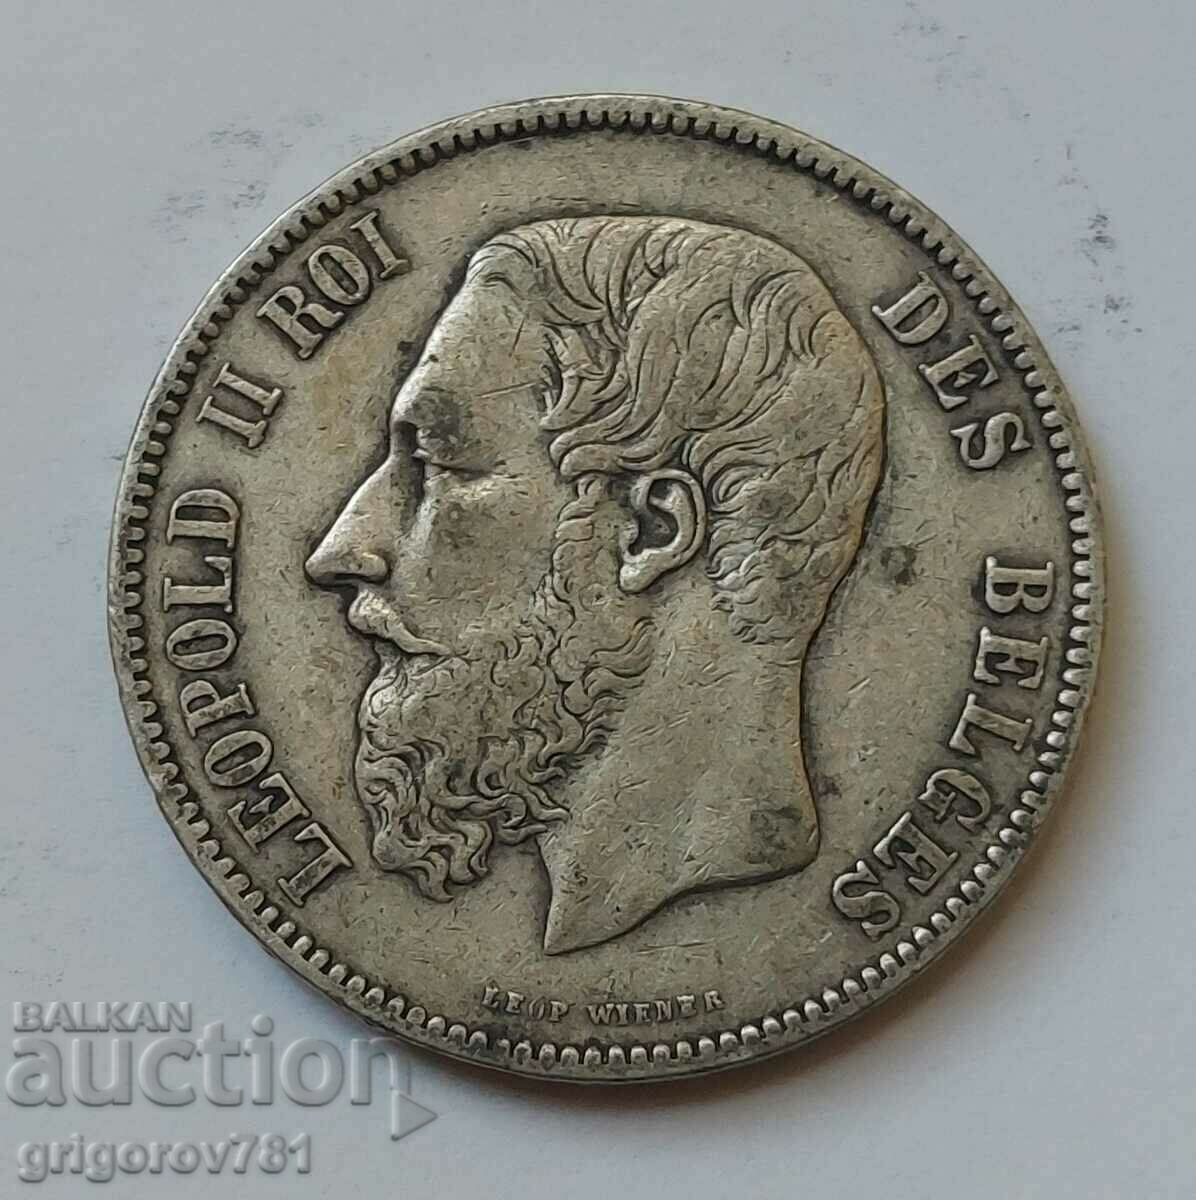 5 Francs Silver Belgium 1873 - Silver Coin #229